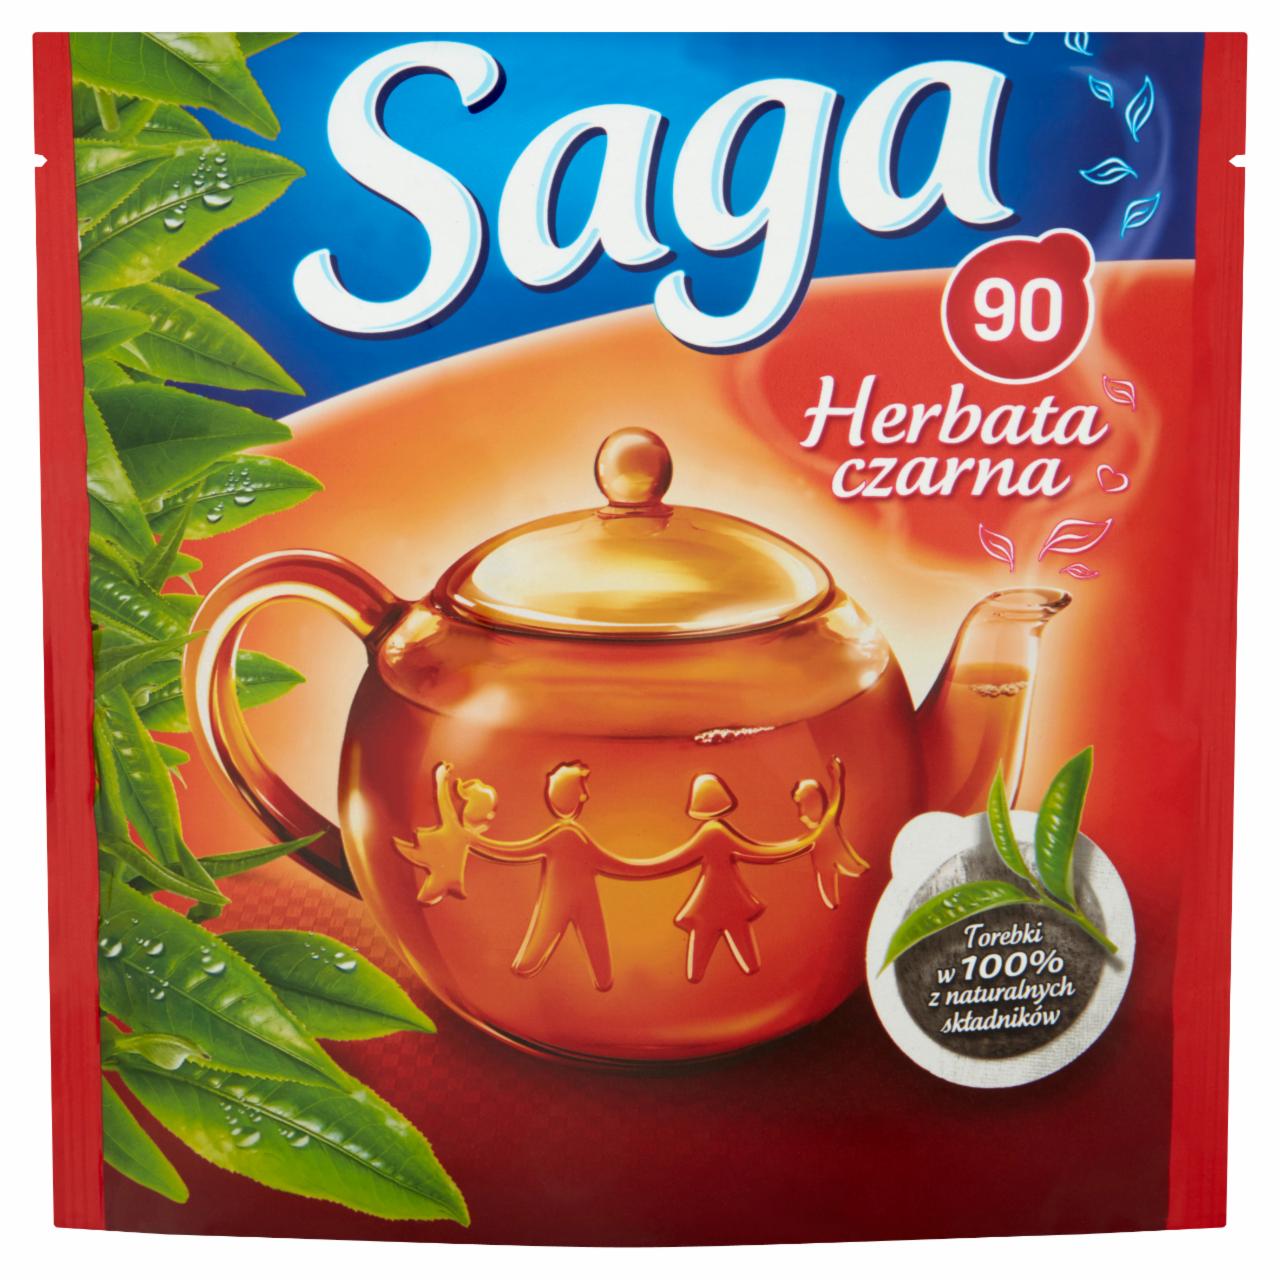 Zdjęcia - Saga Herbata czarna 126 g (90 torebek)